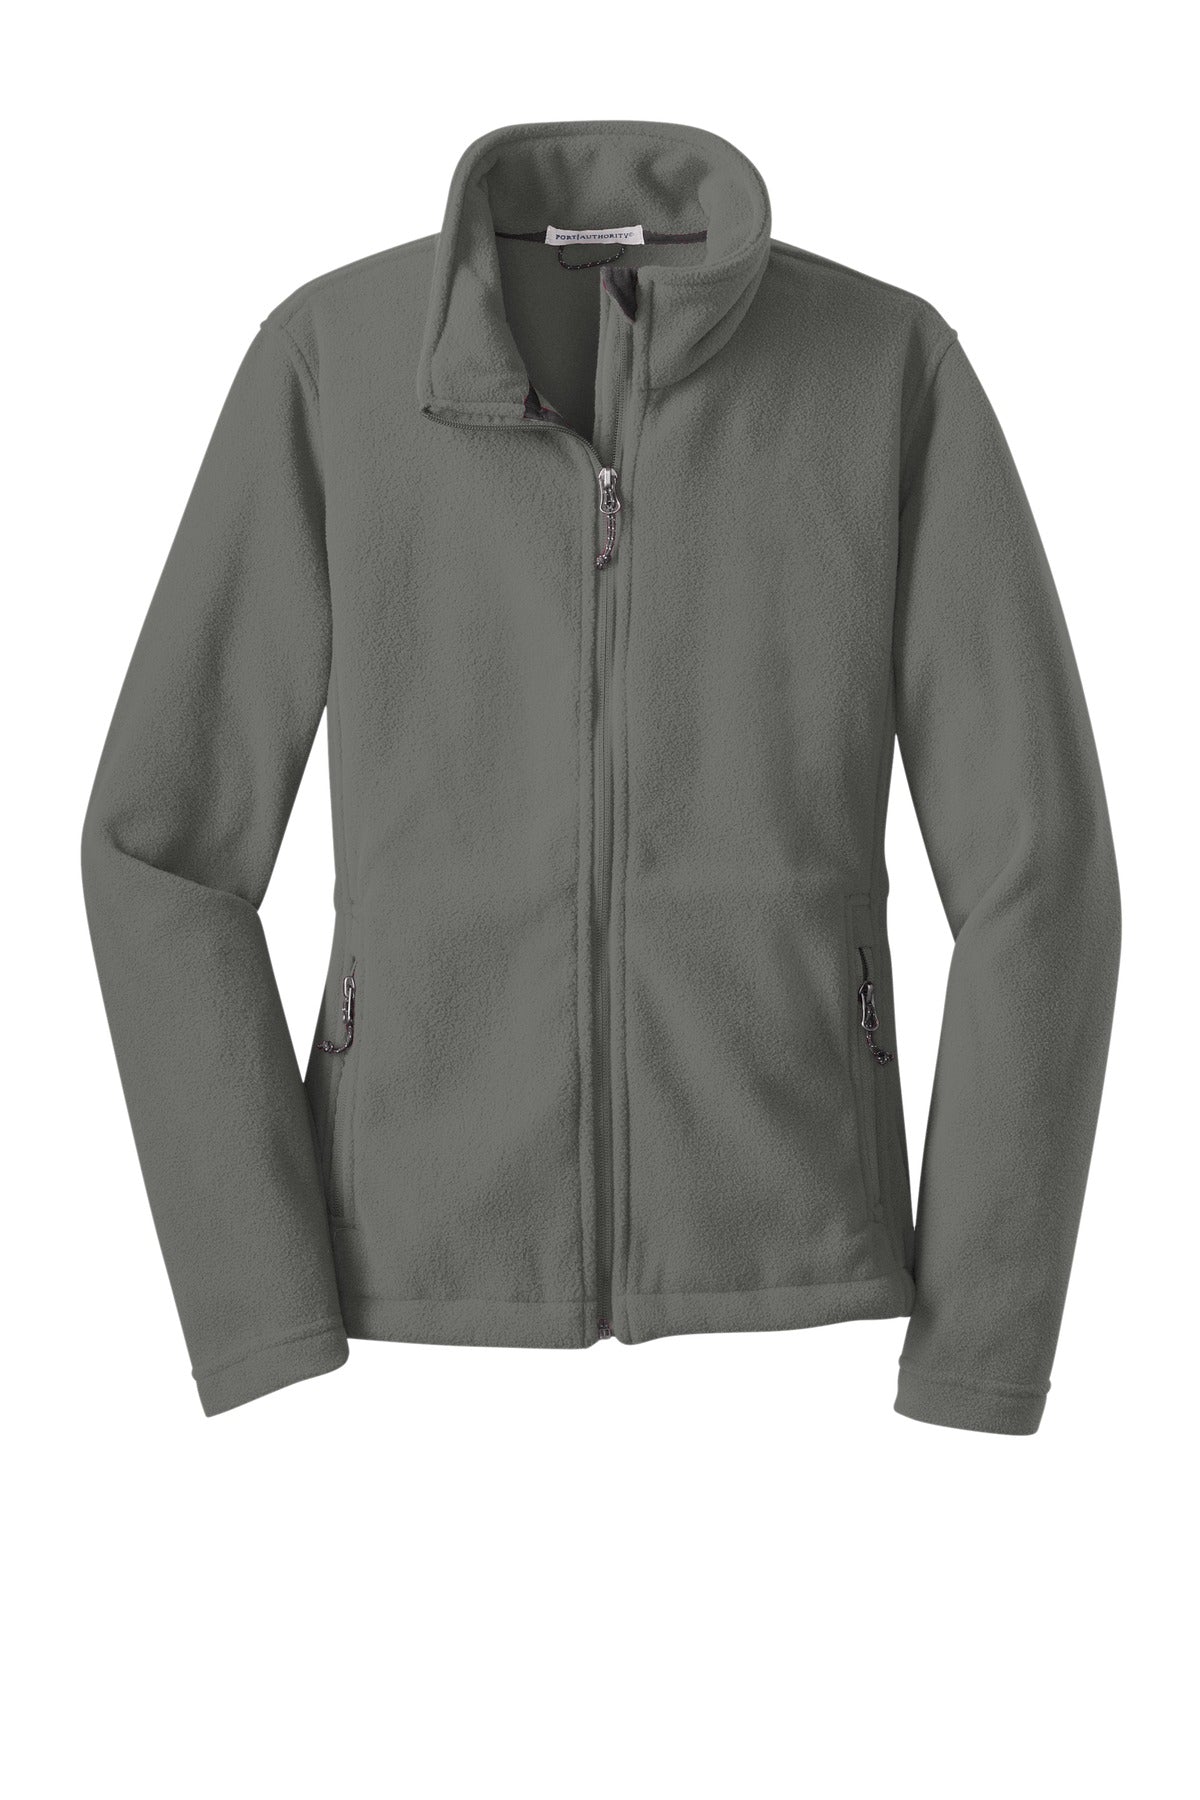 [CUSTOM] Fleece Jacket Full Zip (Ladies) L217